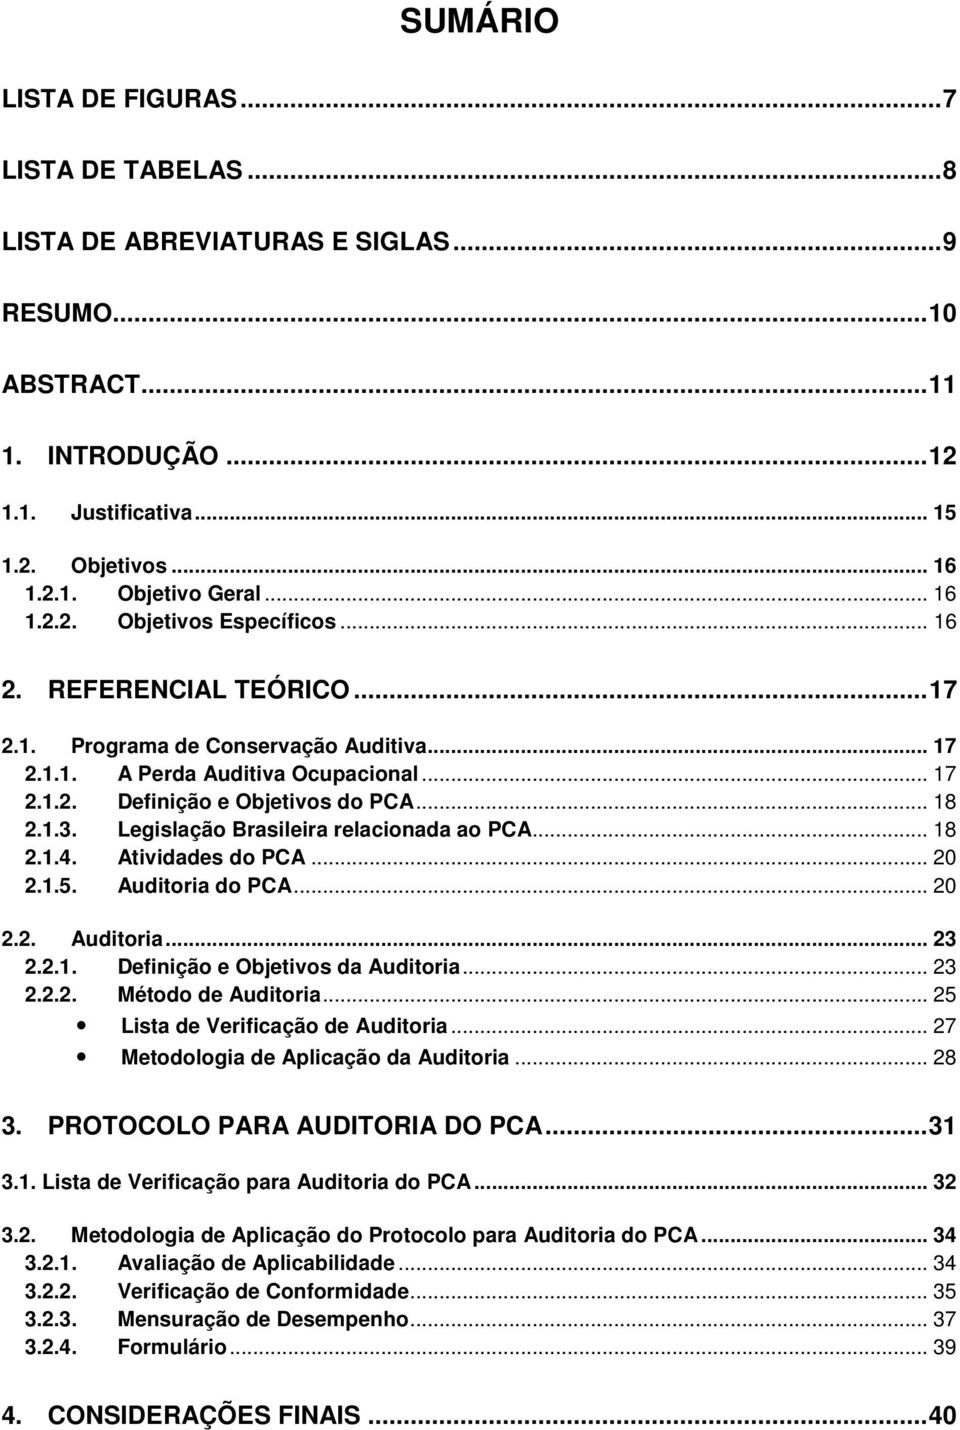 1.3. Legislação Brasileira relacionada ao PCA... 18 2.1.4. Atividades do PCA... 20 2.1.5. Auditoria do PCA... 20 2.2. Auditoria... 23 2.2.1. Definição e Objetivos da Auditoria... 23 2.2.2. Método de Auditoria.